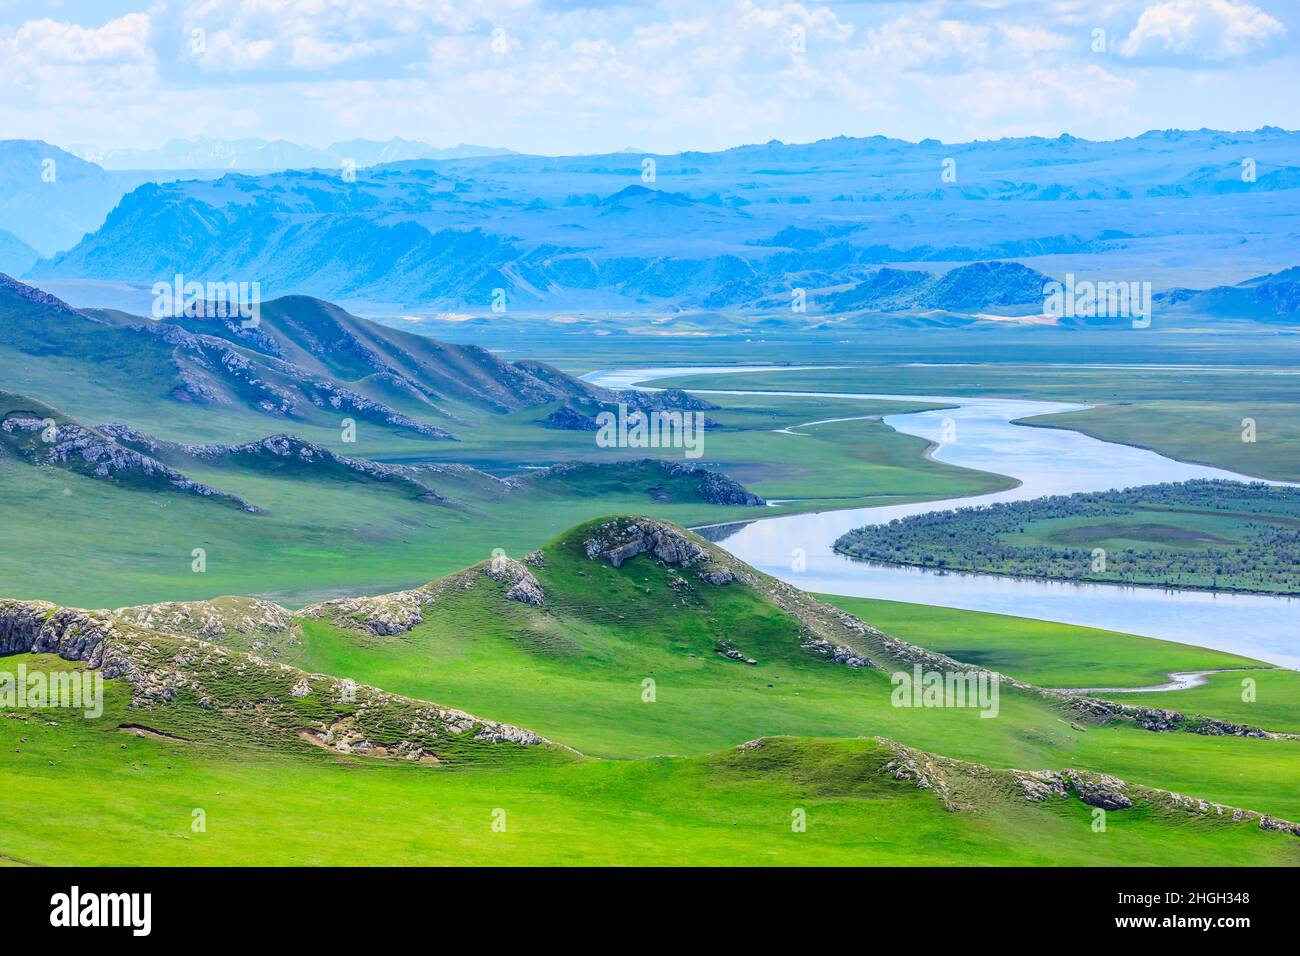 Paysage naturel de la prairie de Bayinbuluke à Xinjiang, Chine.la rivière sinueuse est sur la prairie verte. Banque D'Images